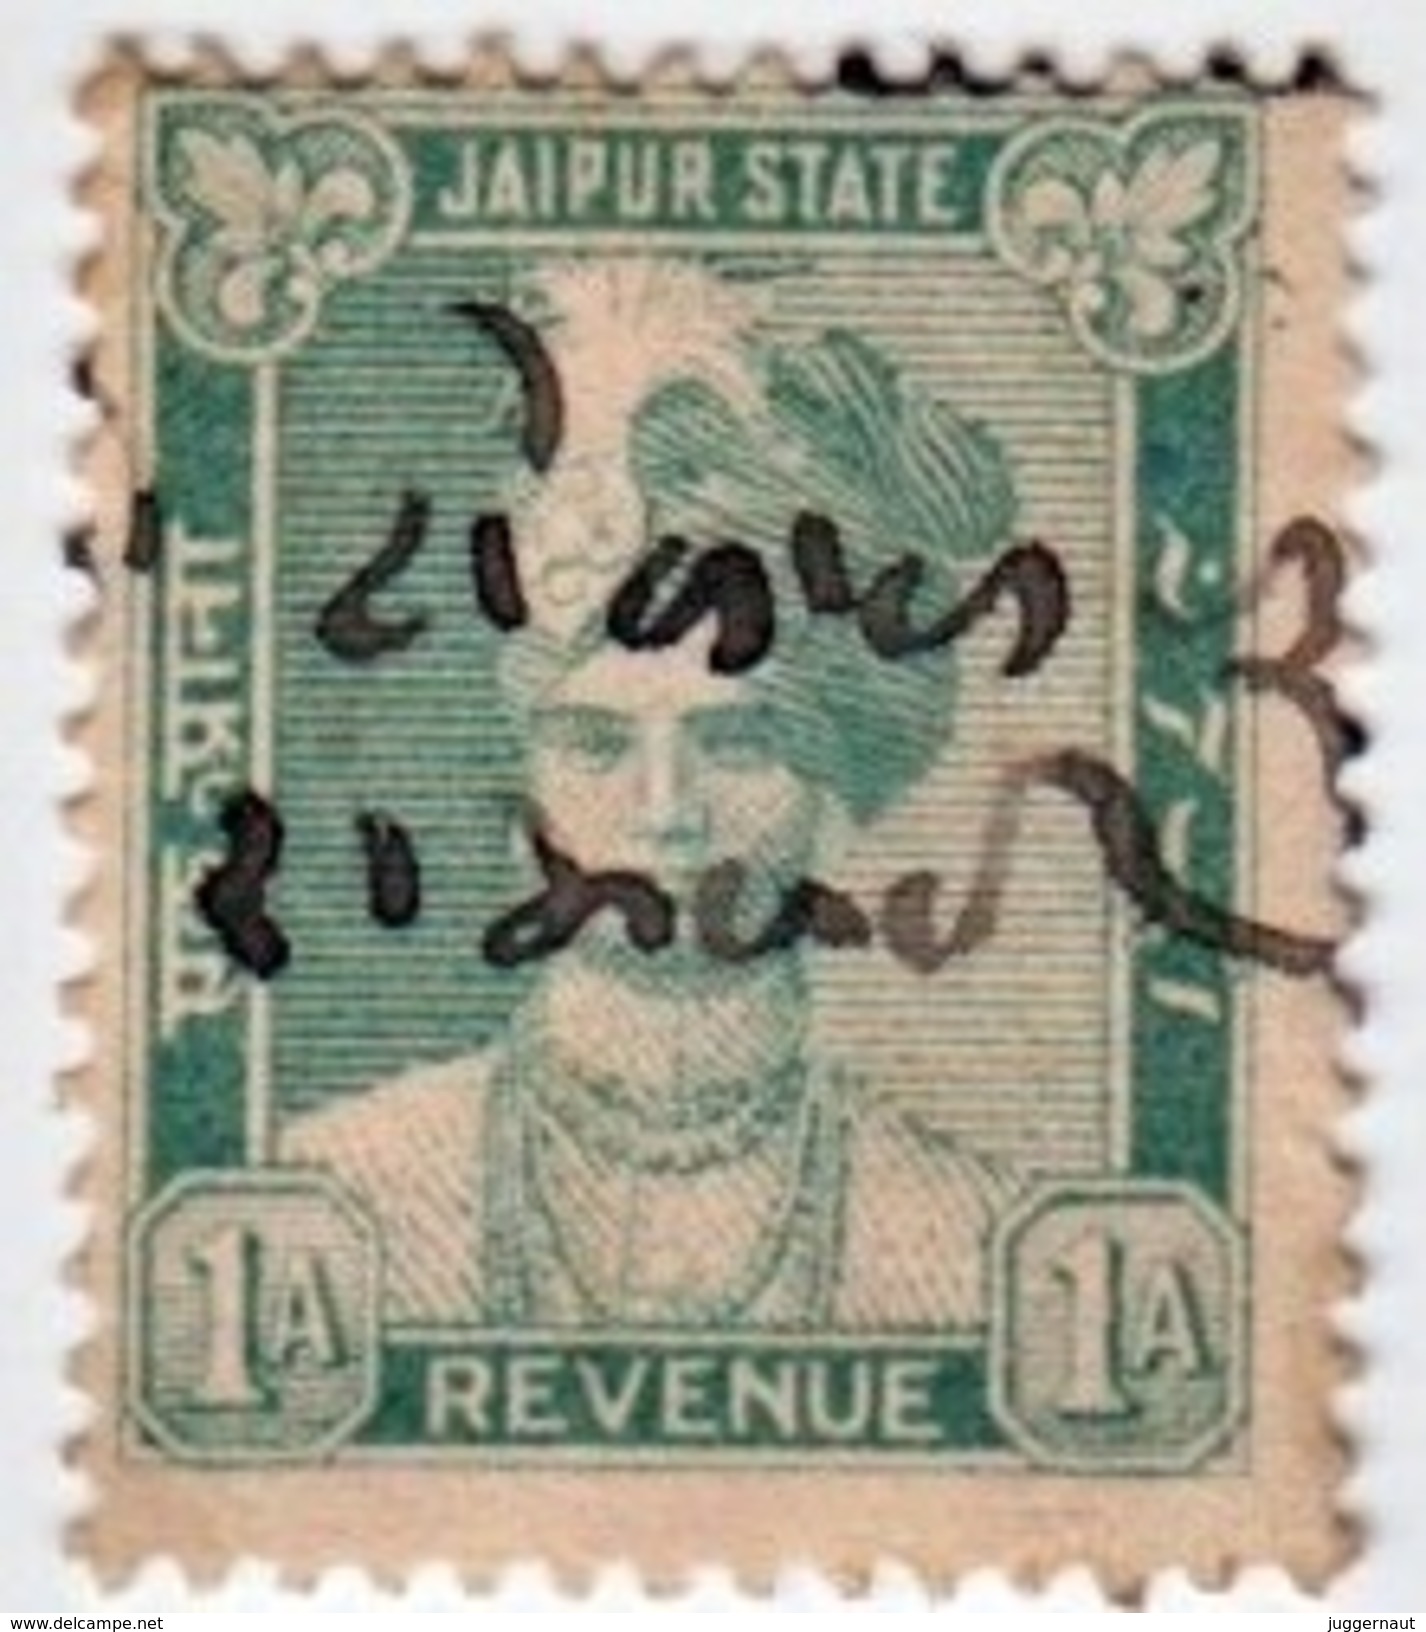 INDIA JAIPUR PRINCELY STATE 1-ANNA REVENUE STAMP 1930-1940 GOOD/USED - Jaipur